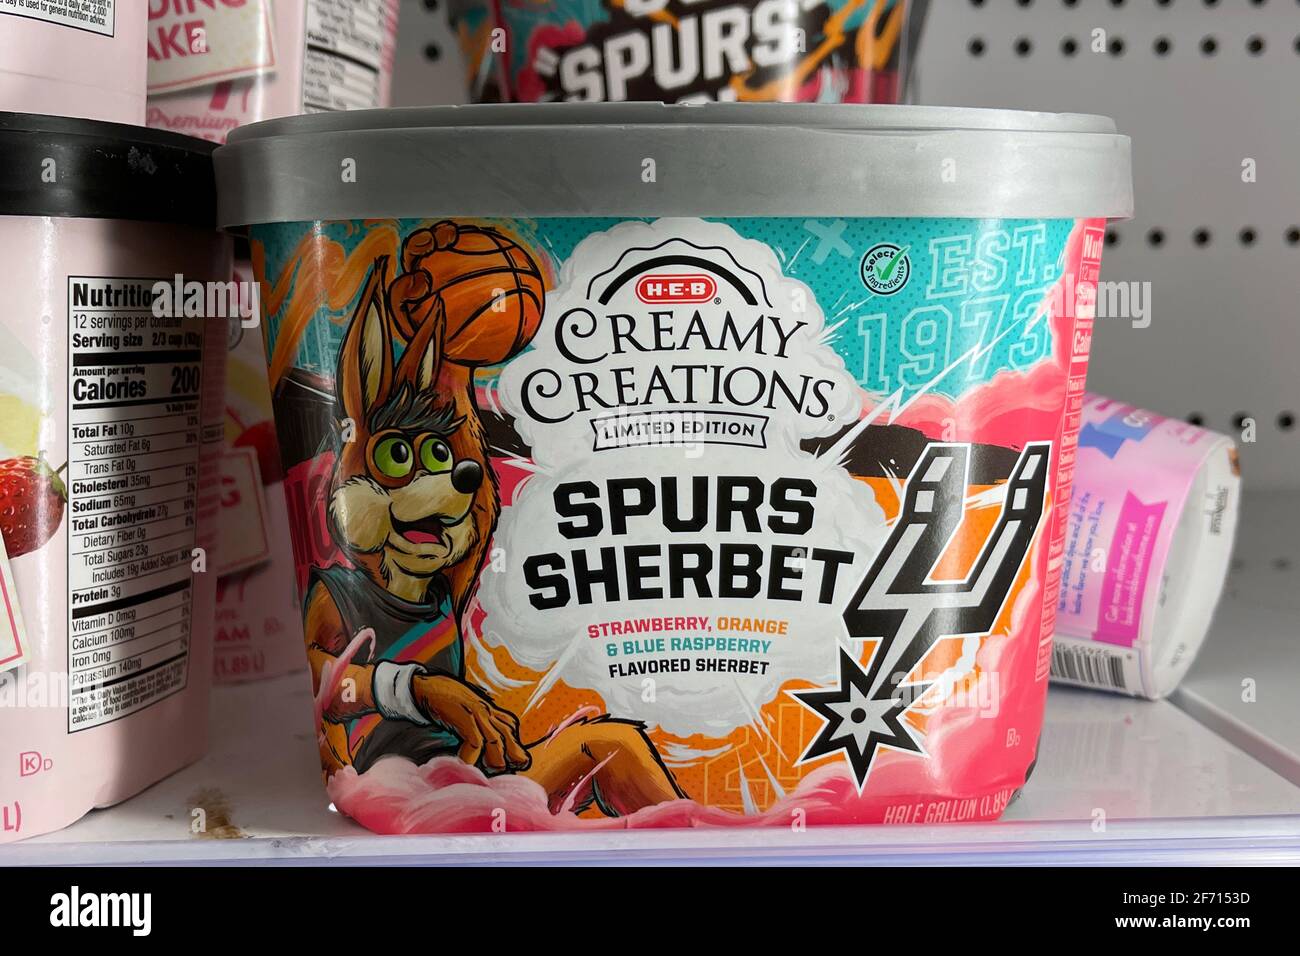 Am Samstag, den 3. April 2021, wird in einem H-E-B Supermarkt ein Eisbehälter von Spurs Sherbert gesehen. Stockfoto